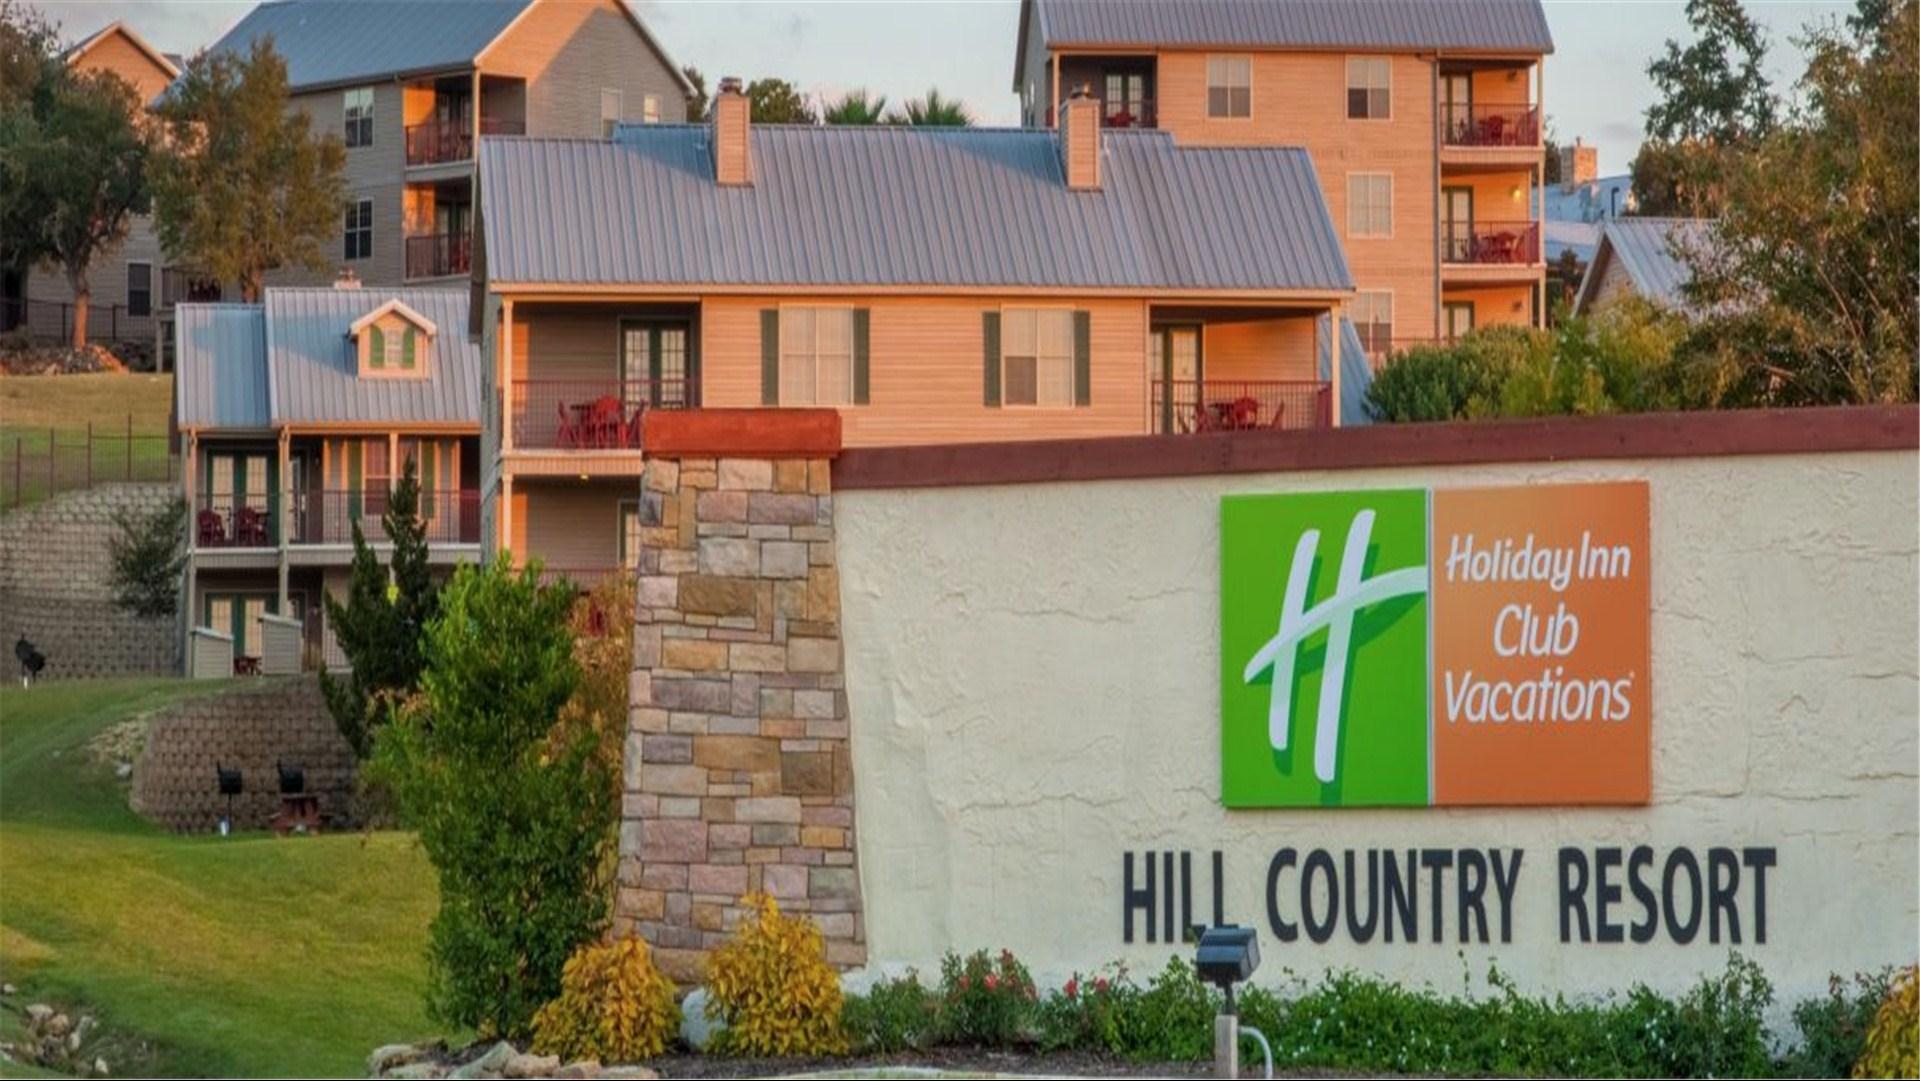 Holiday Inn Club Vacations Hill Country Resort at Canyon Lake in Canyon Lake, TX